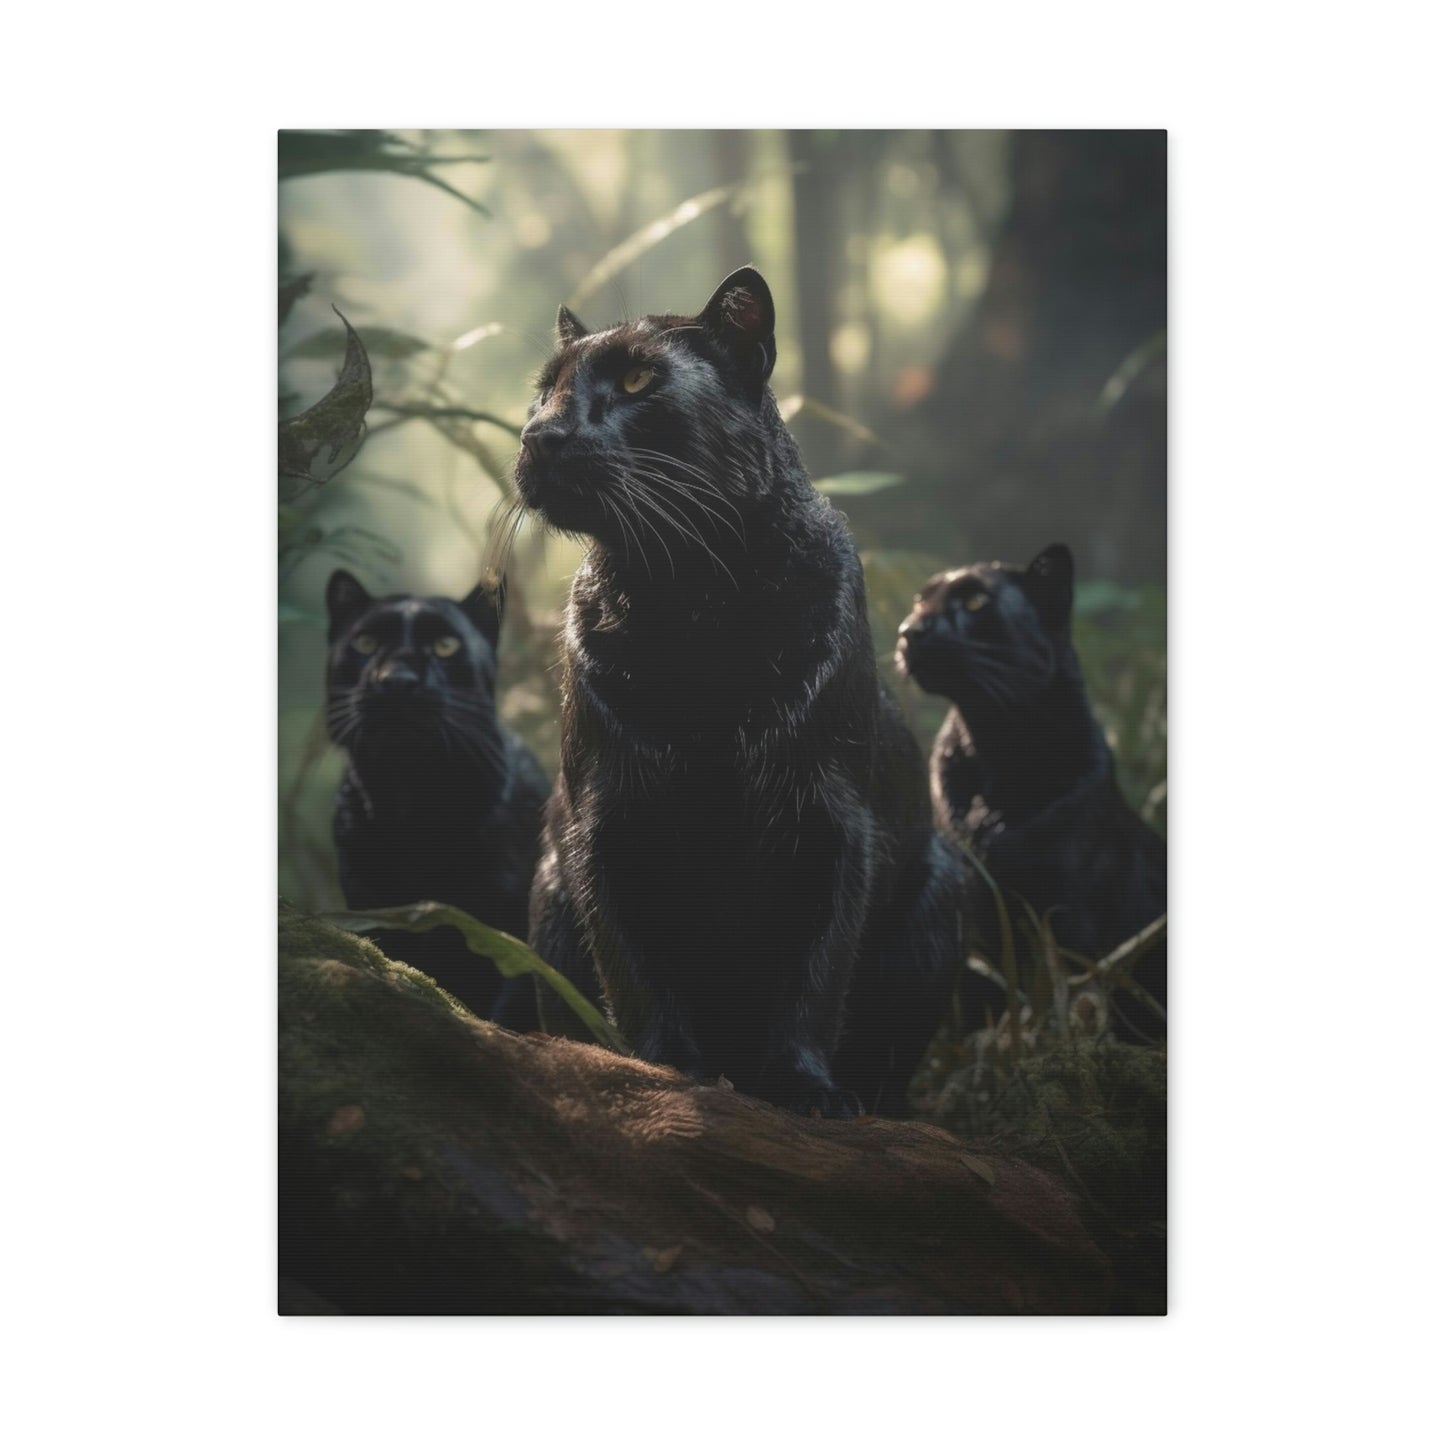 Black Panther kittens